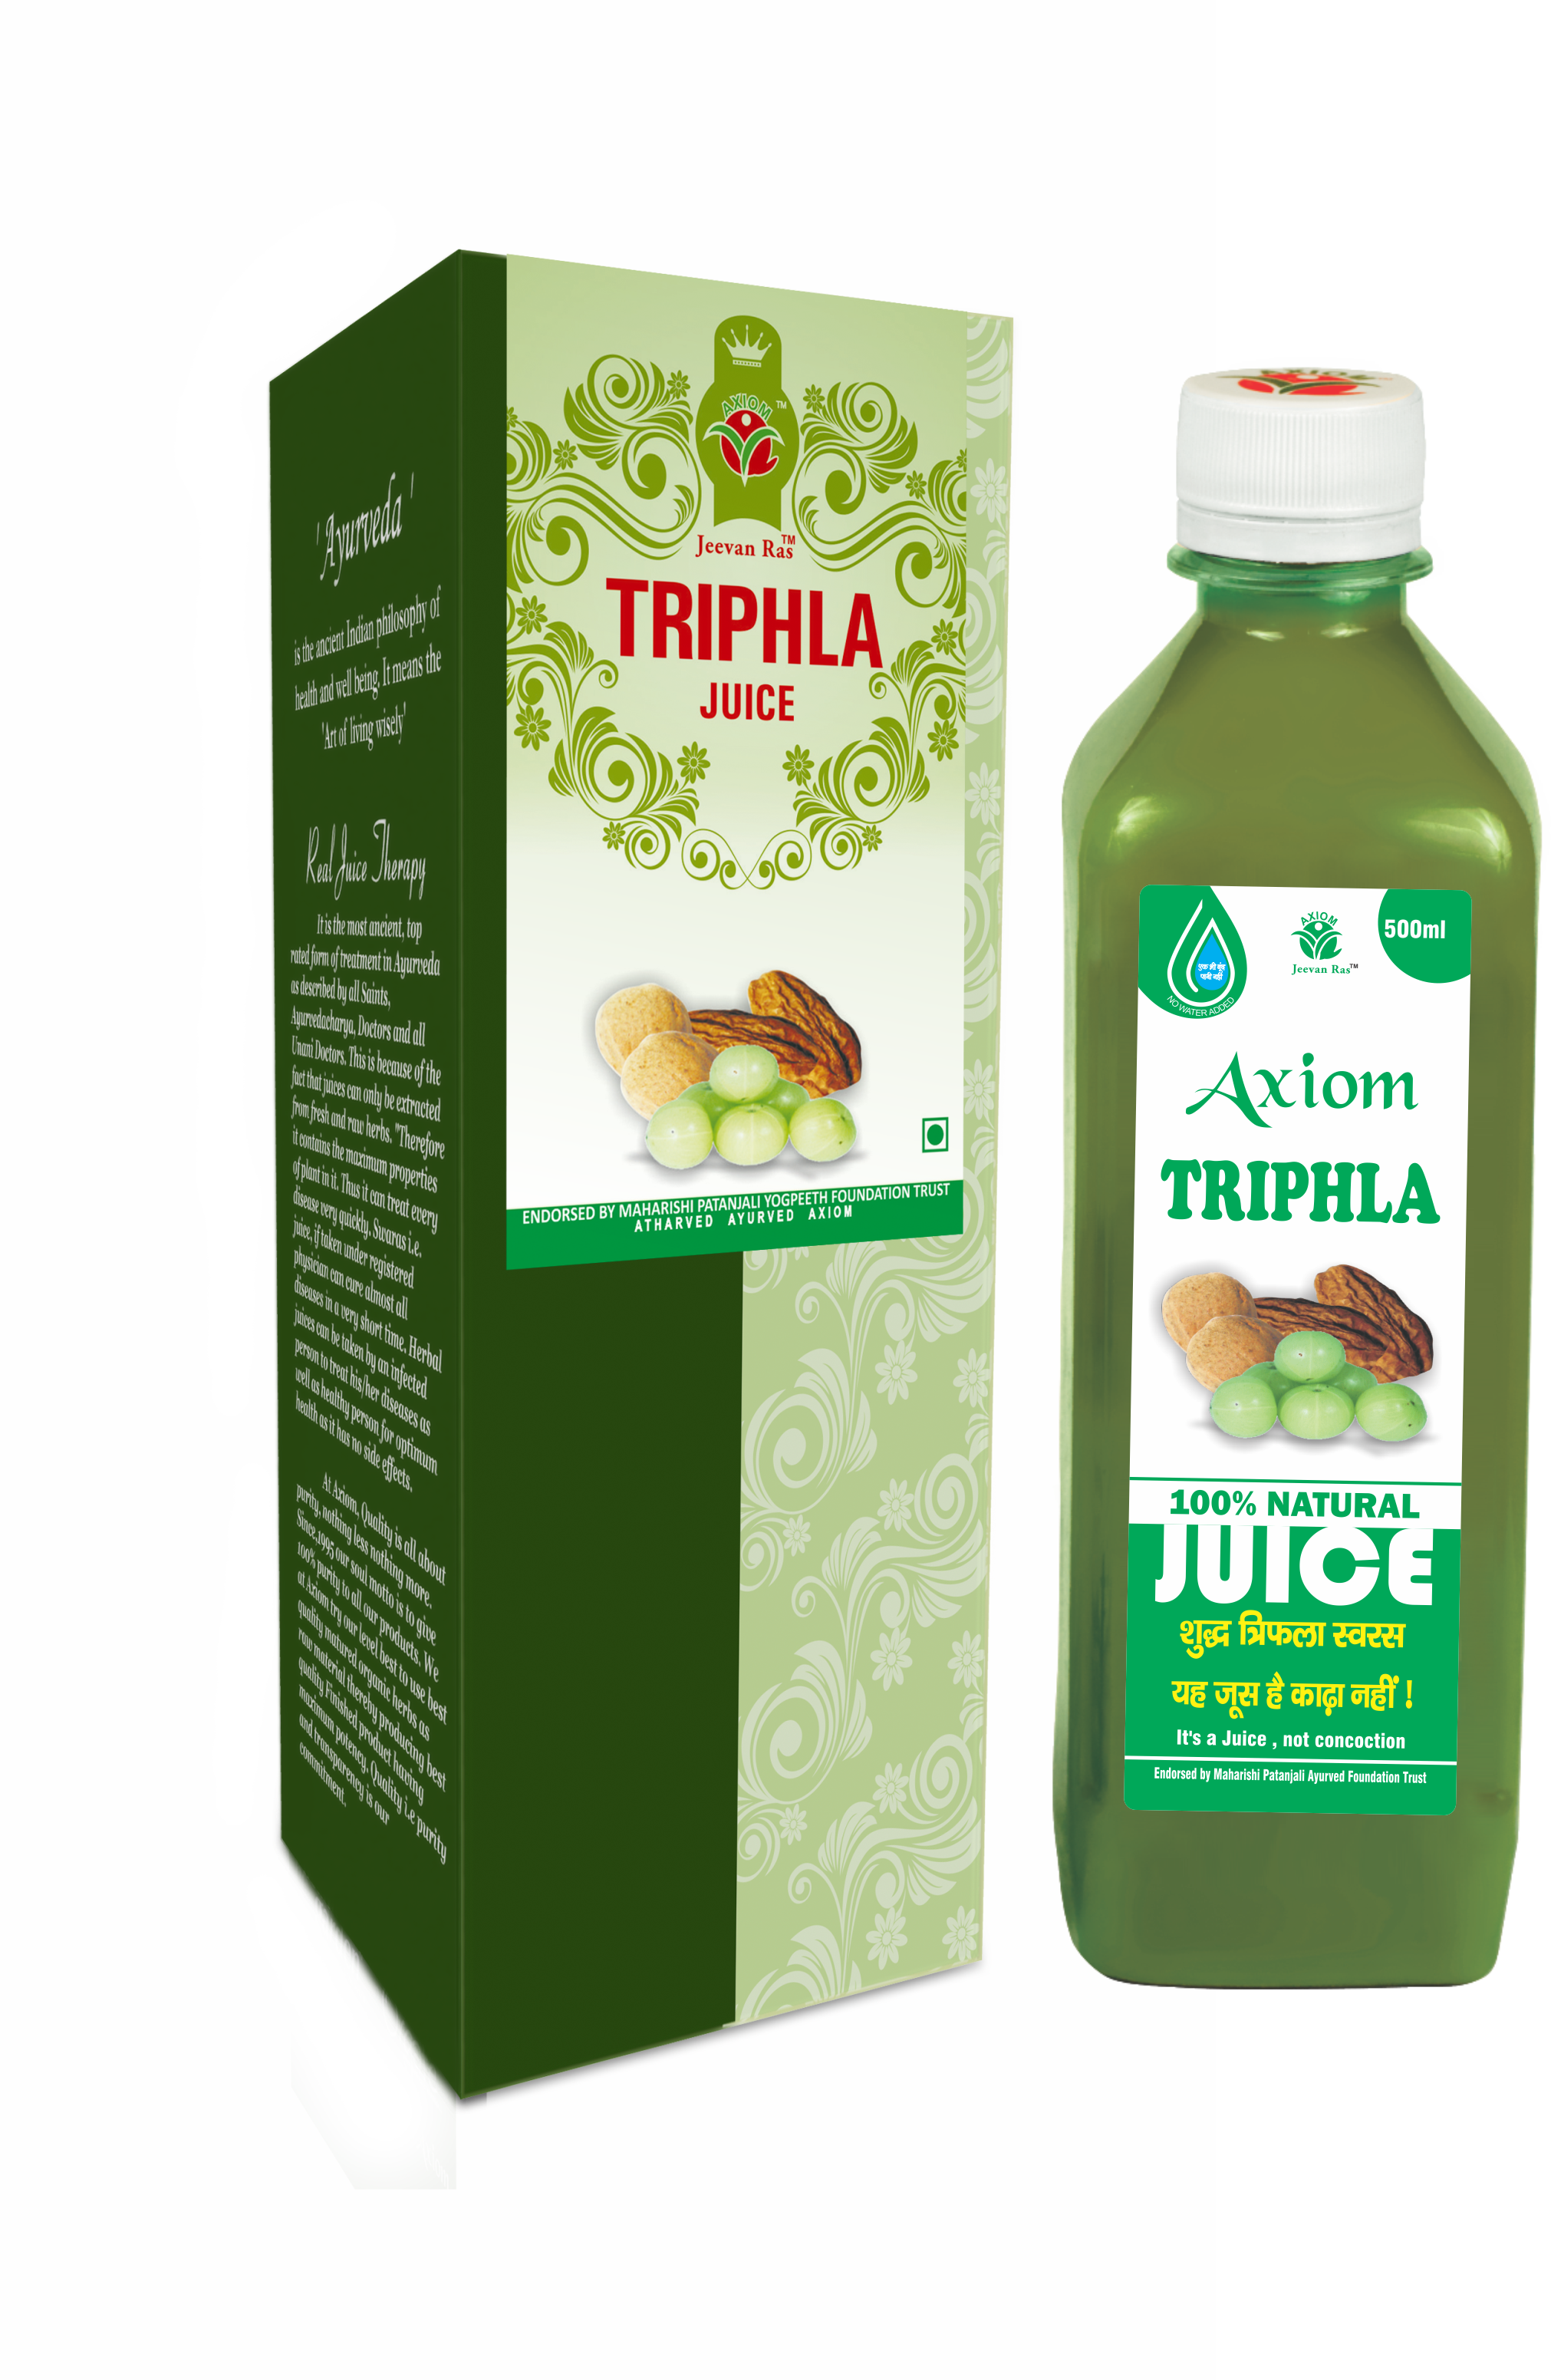 Buy Axiom Triphla Juice at Best Price Online